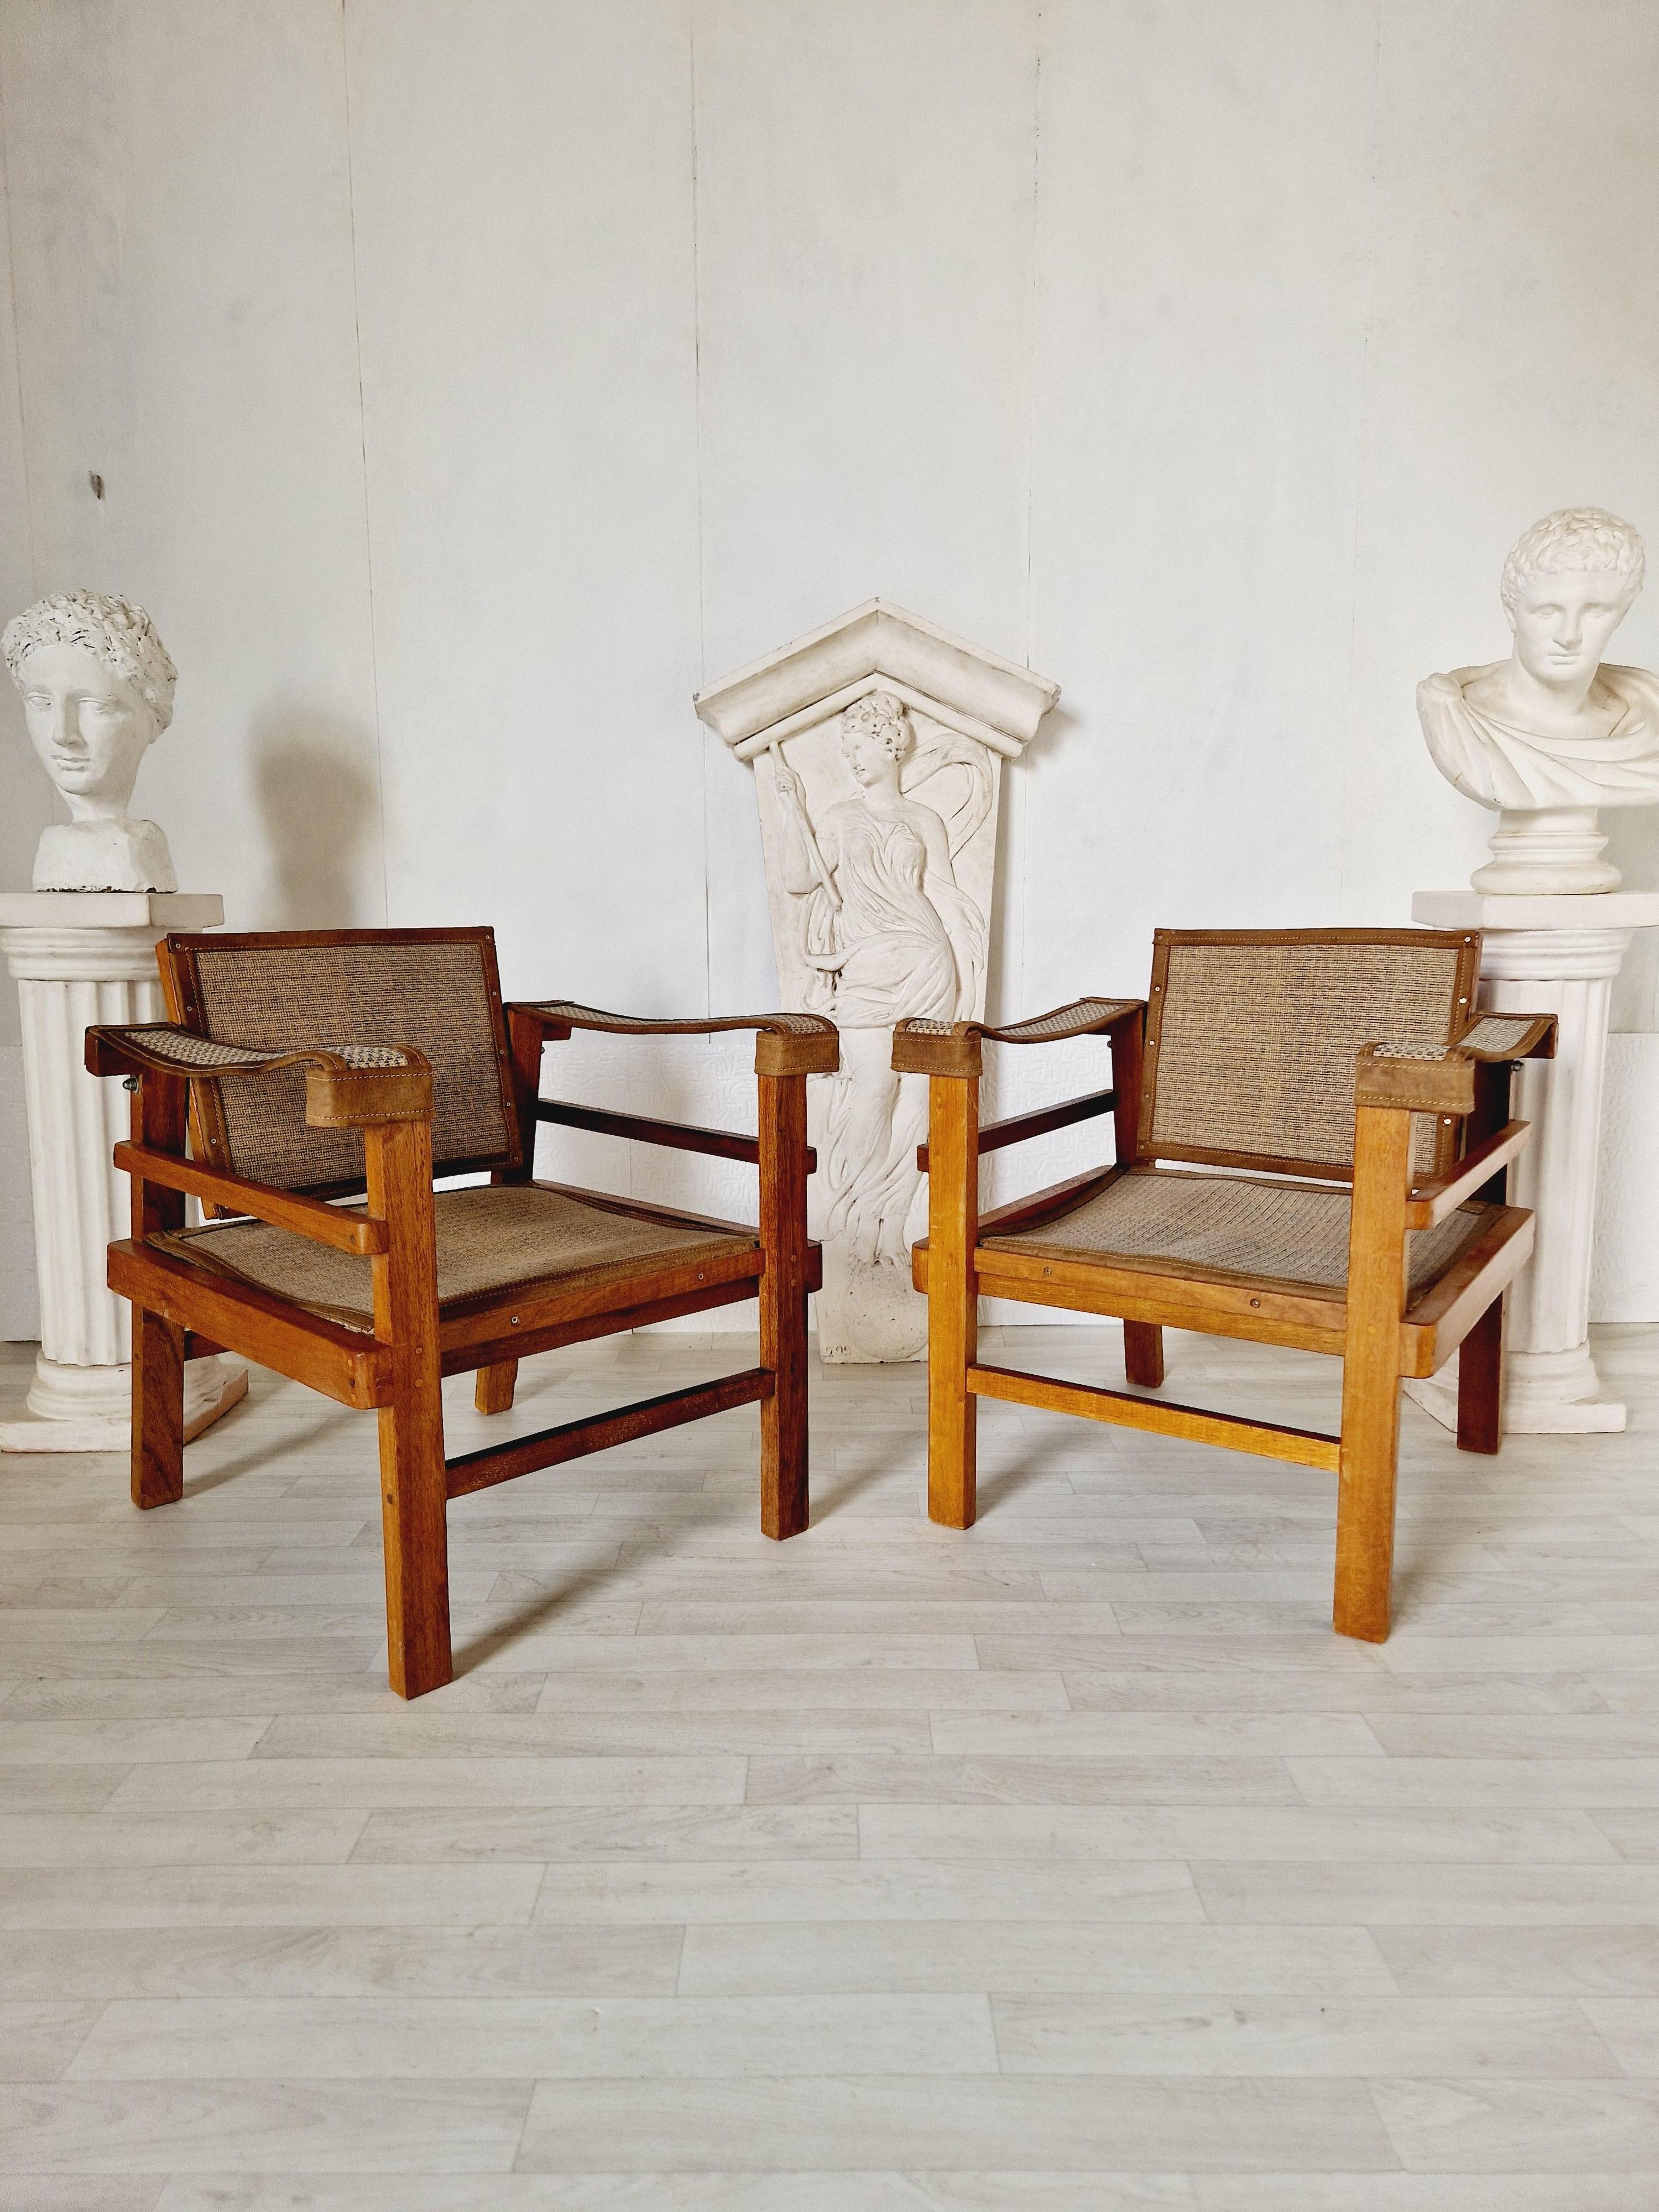 Dieses Paar von Vintage-Sesseln ist eine schöne Ergänzung für jeden Raum. Mit ihrer quadratischen Form und ihren verstellbaren Funktionen bieten sie ein komfortables Sitzerlebnis. Die Vintage-Stühle sind aus hochwertigem Leder und Teakholz gefertigt